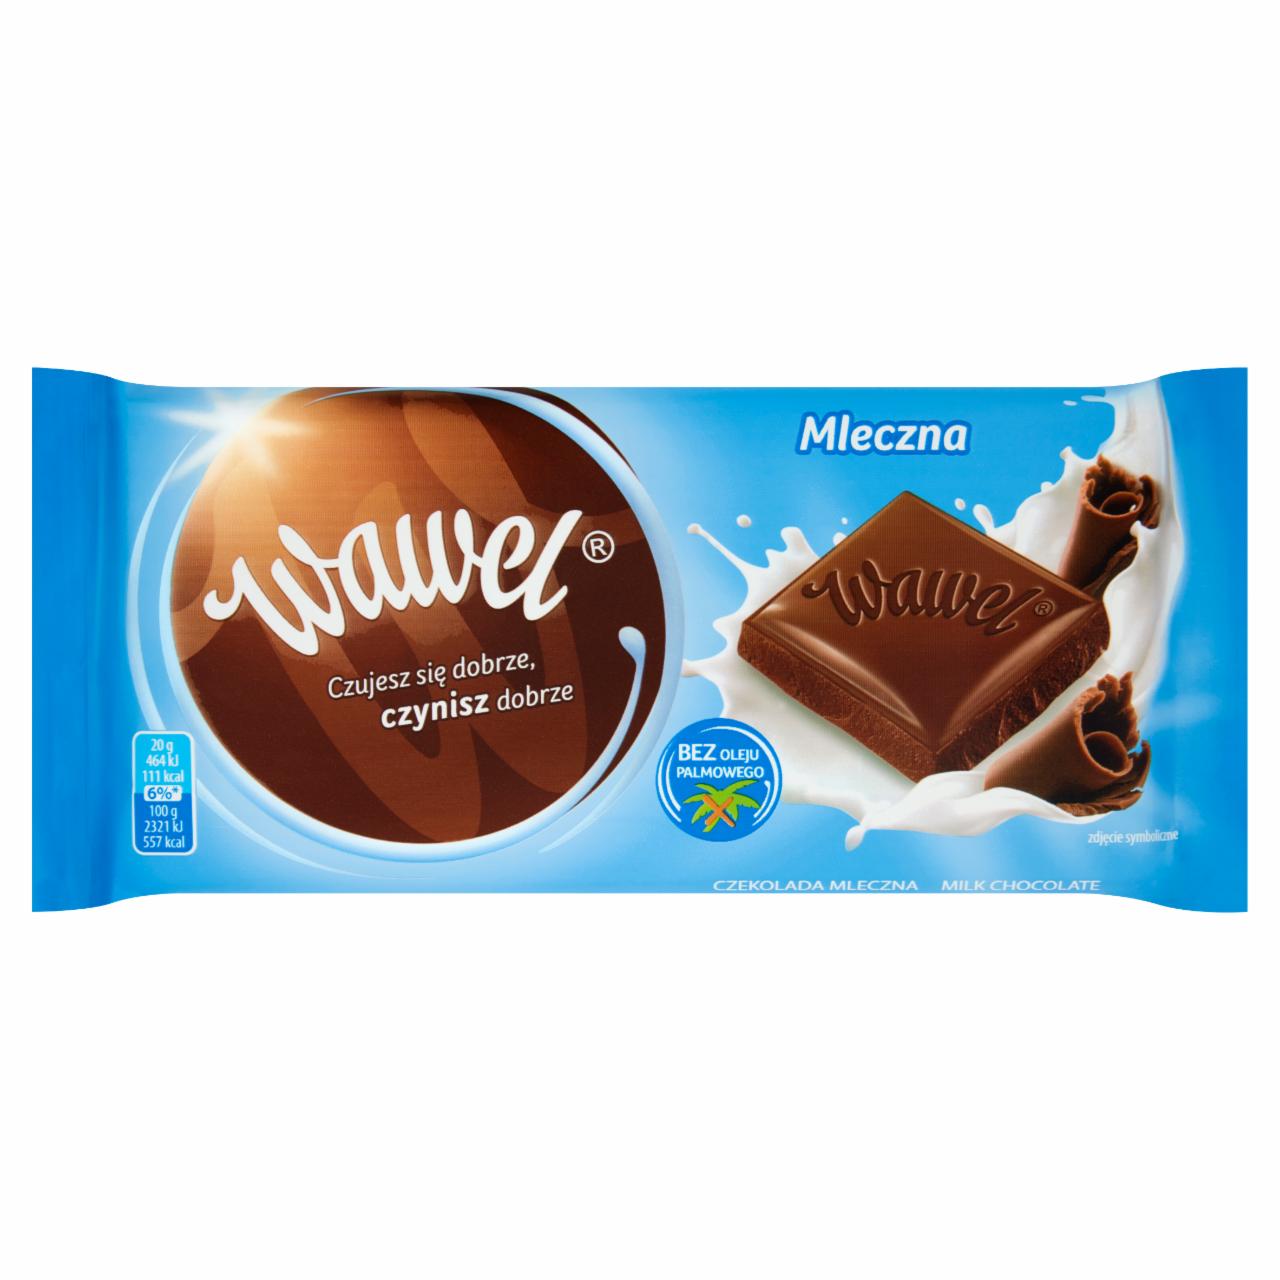 Fotografie - Wawel Milk chocolate